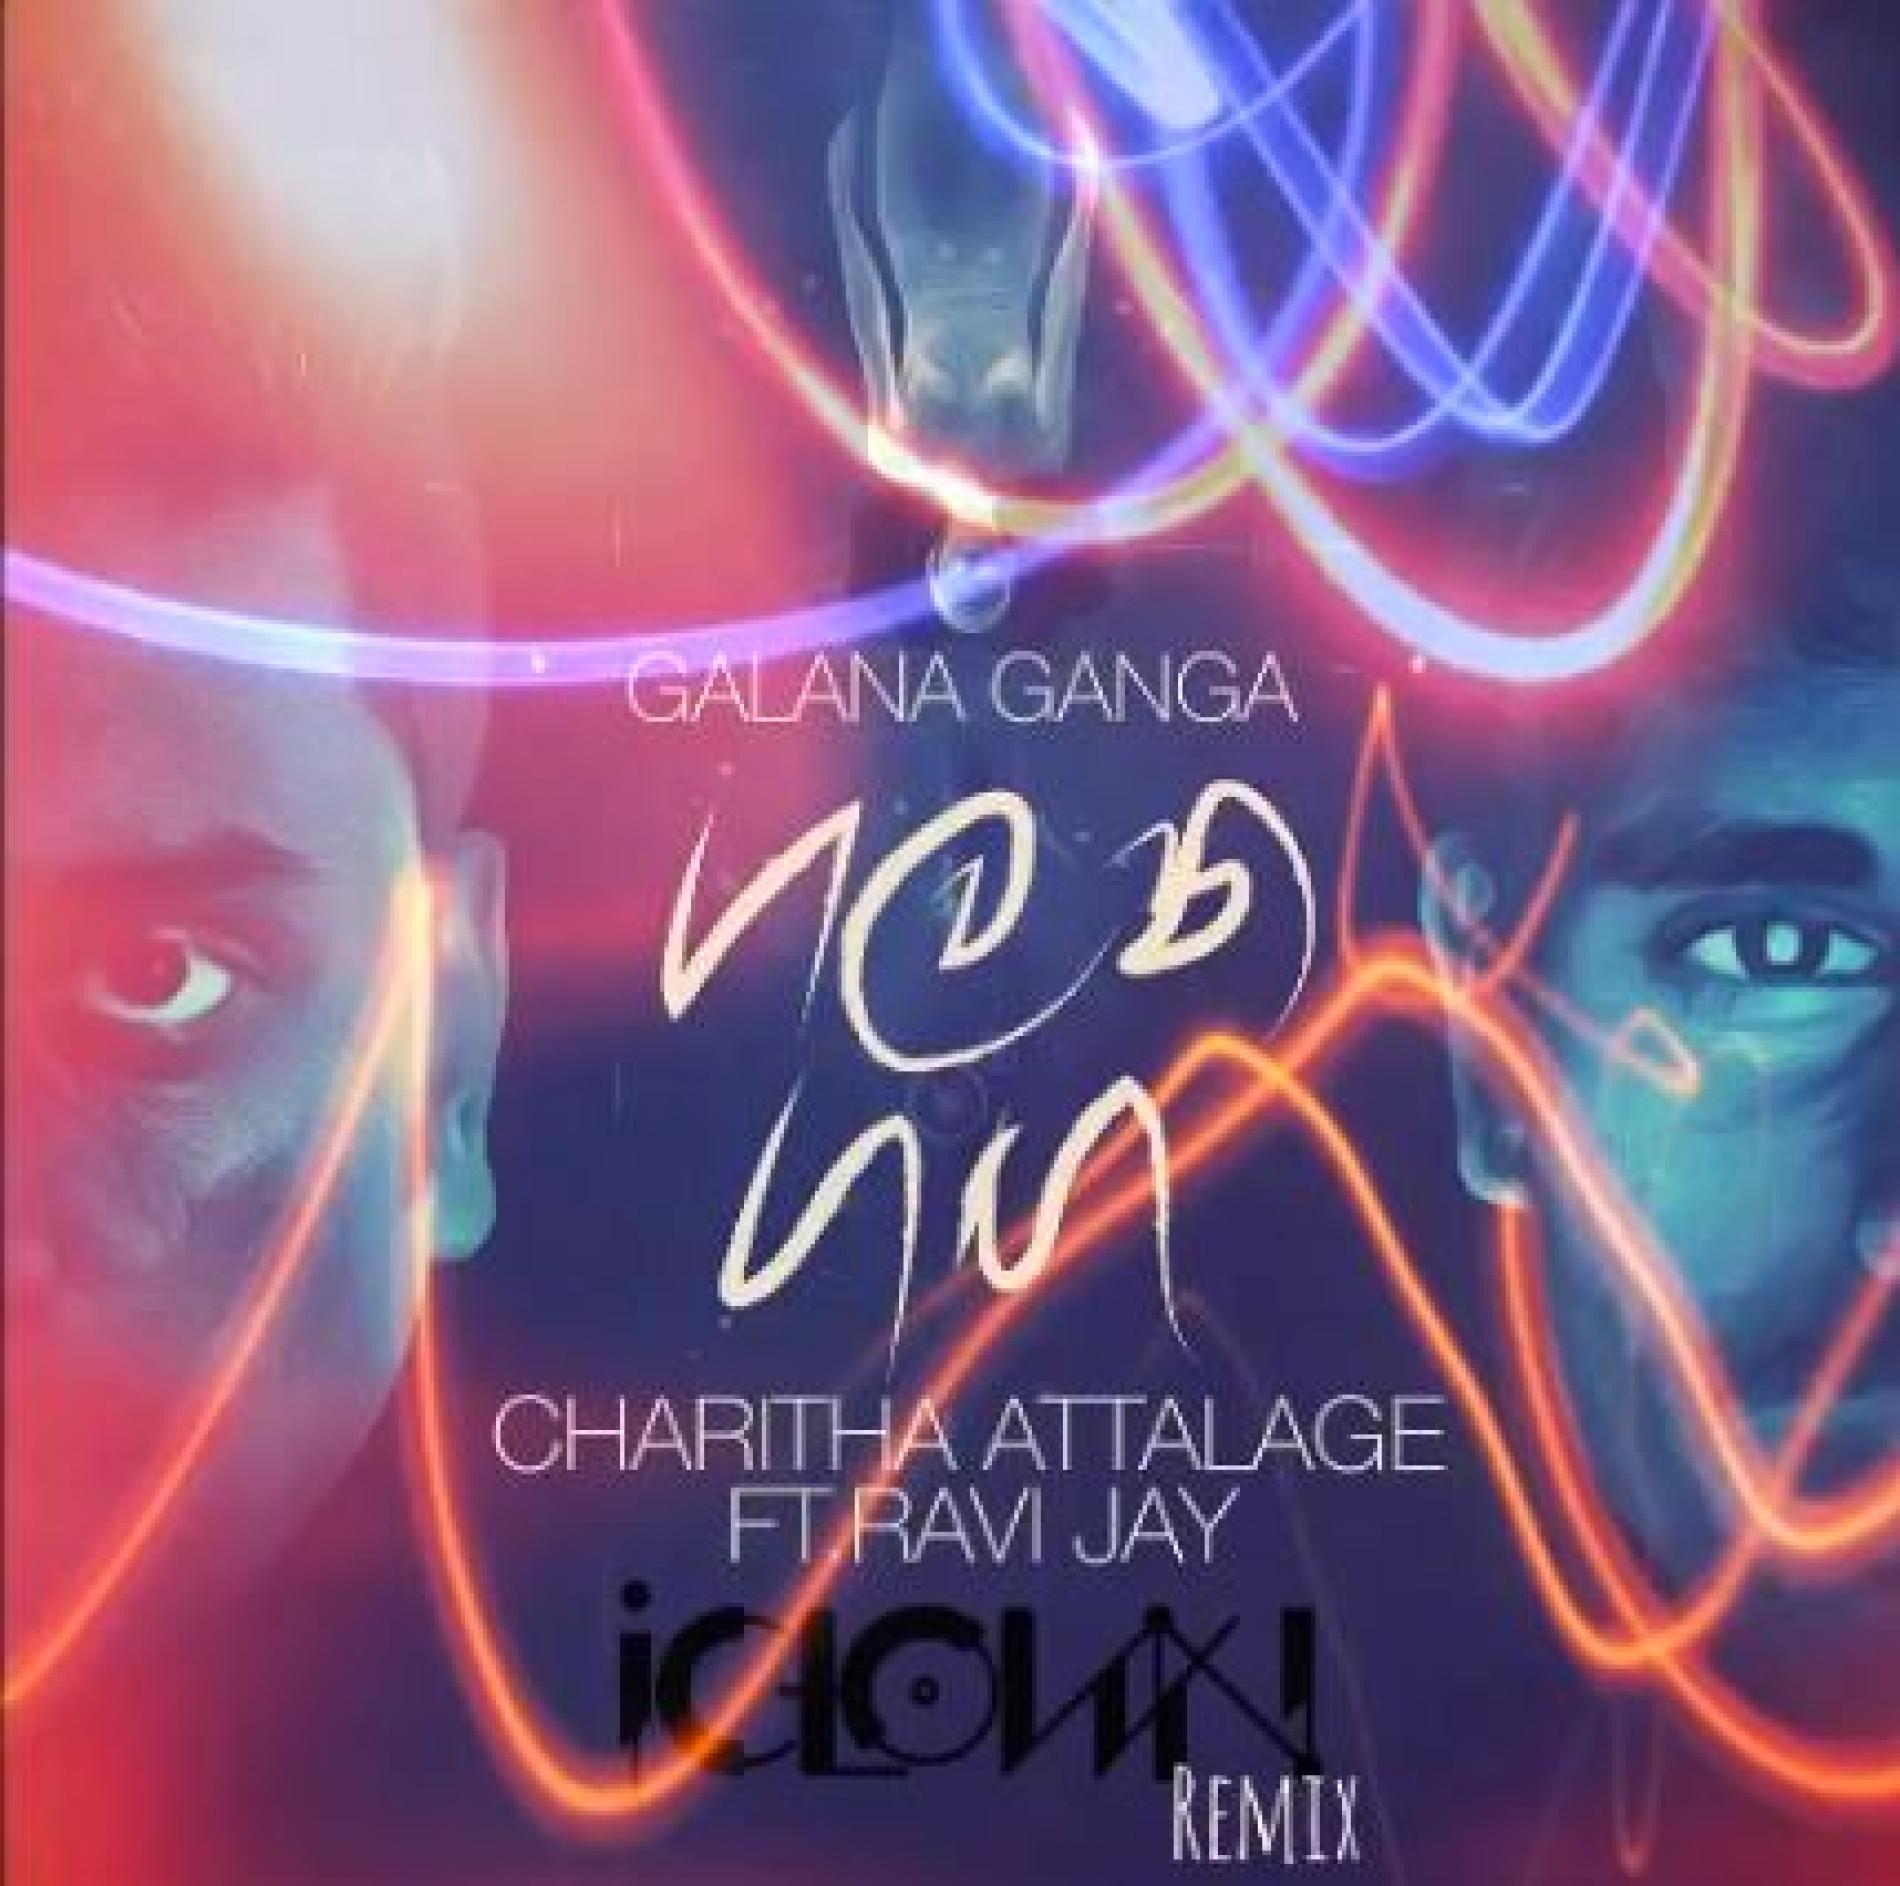 Charitha Attalage Ft Ravi Jay – Galana Ganga (iClown Remix)